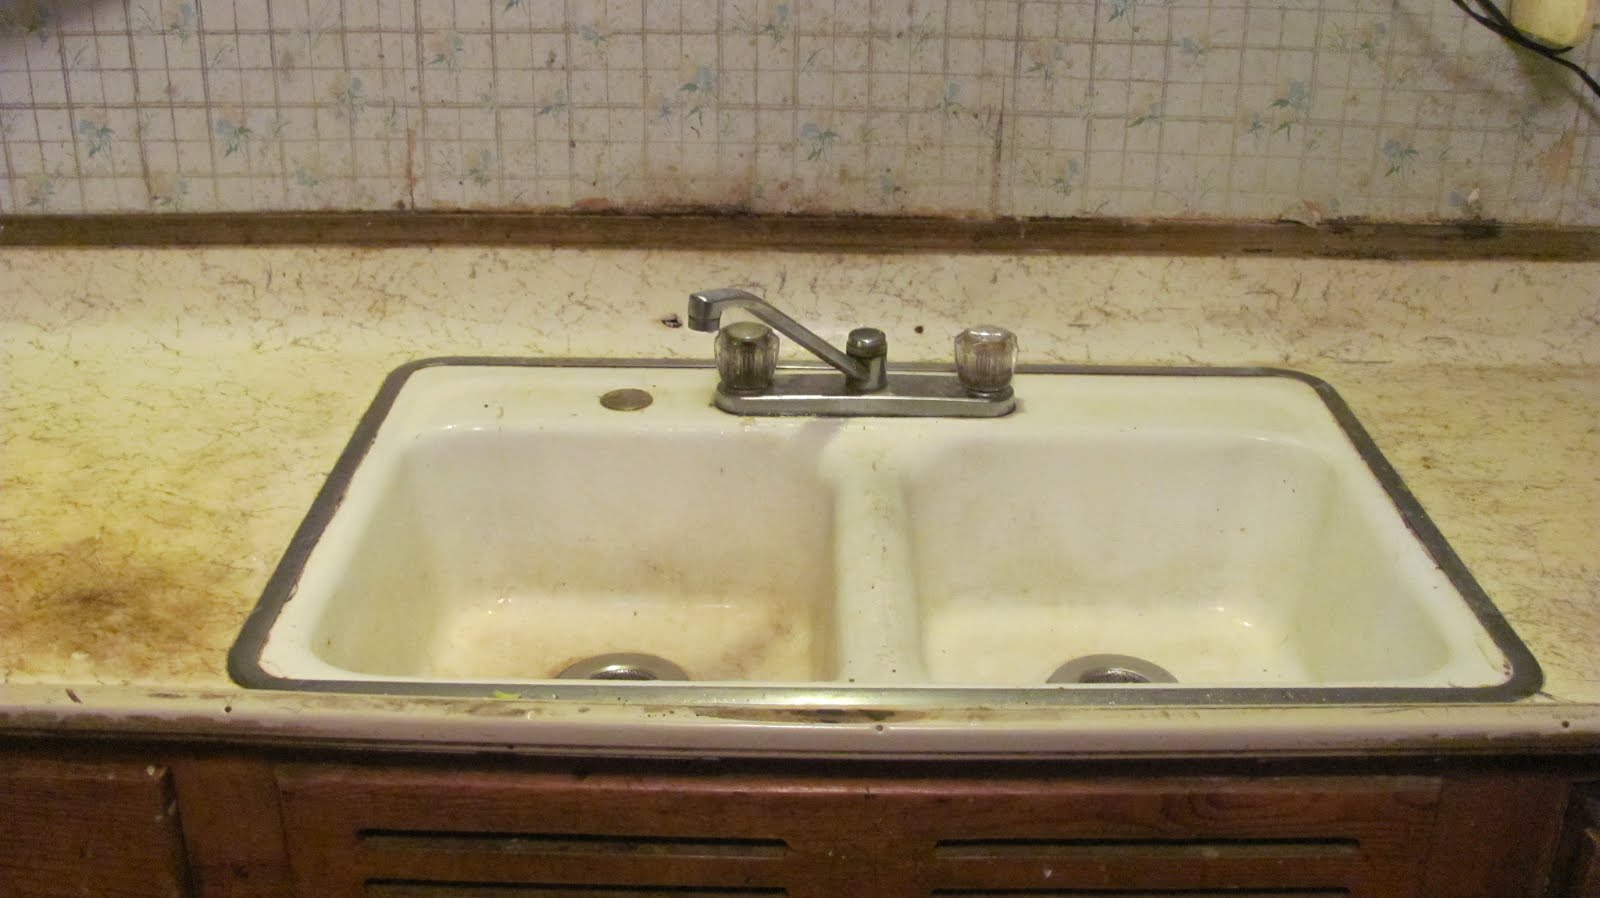 Adventures in Installing a Kitchen Sink